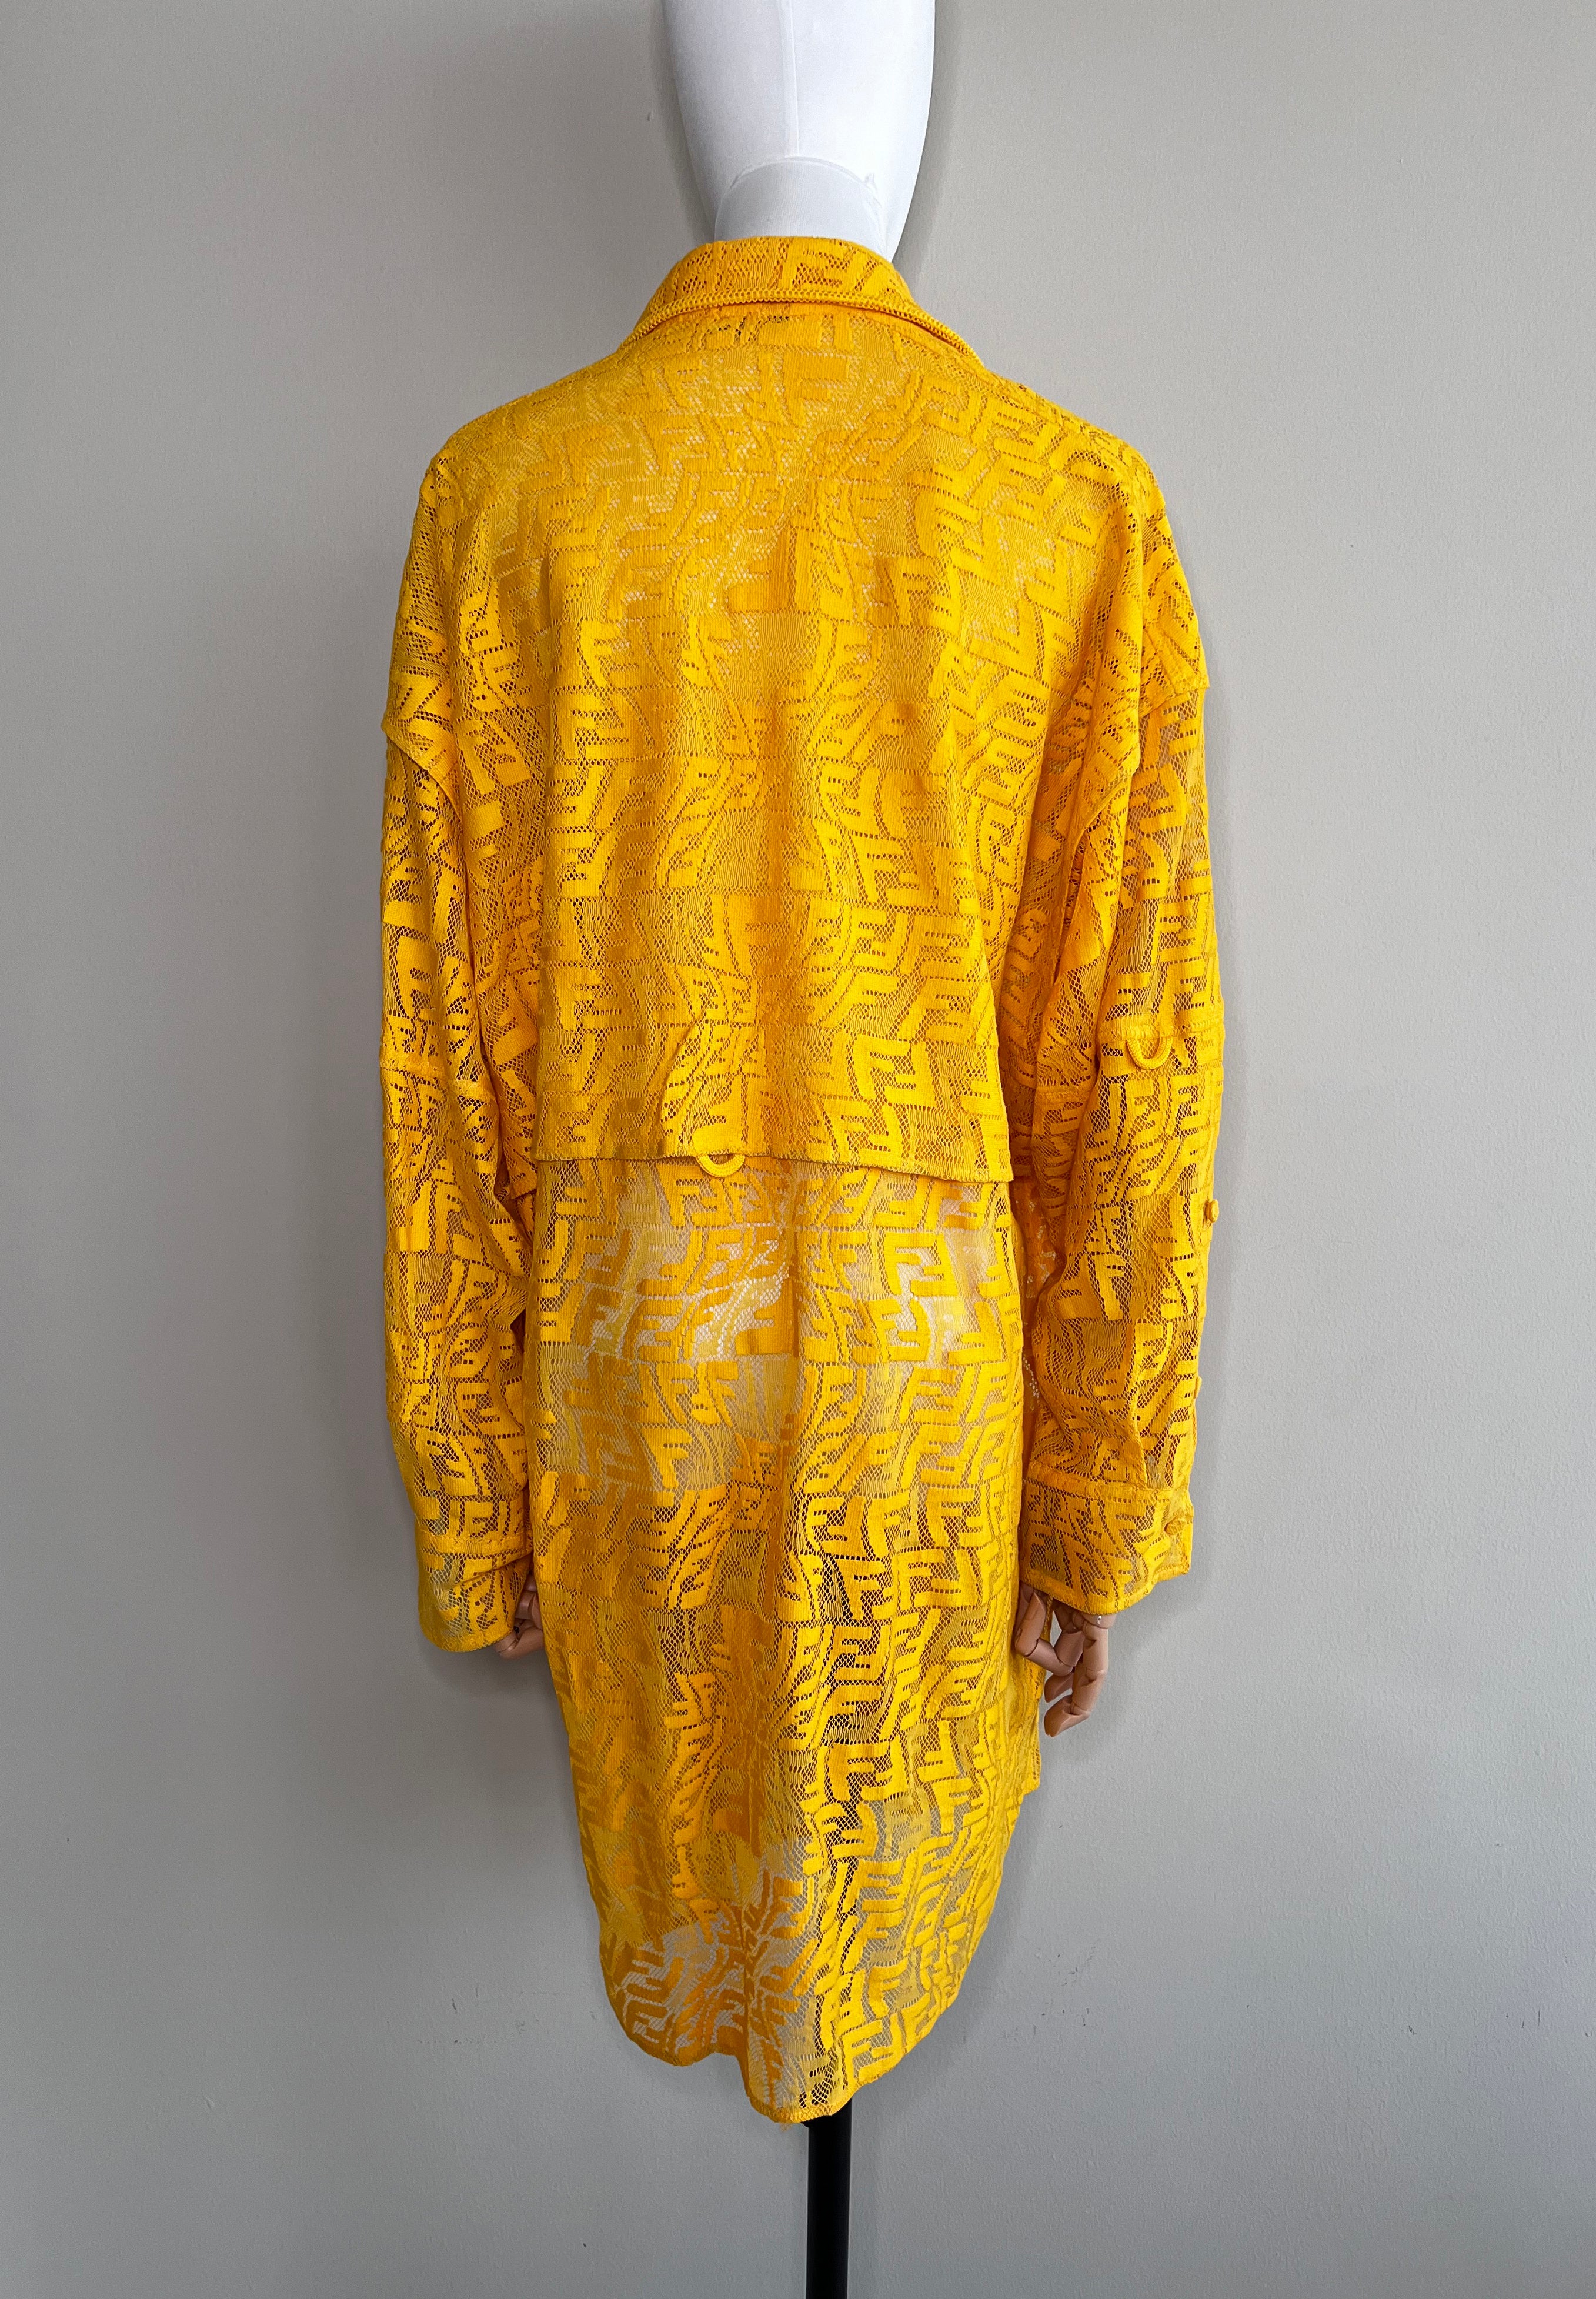 Yellow FF Fisheye motif lace embroidered shirt dress - FENDI